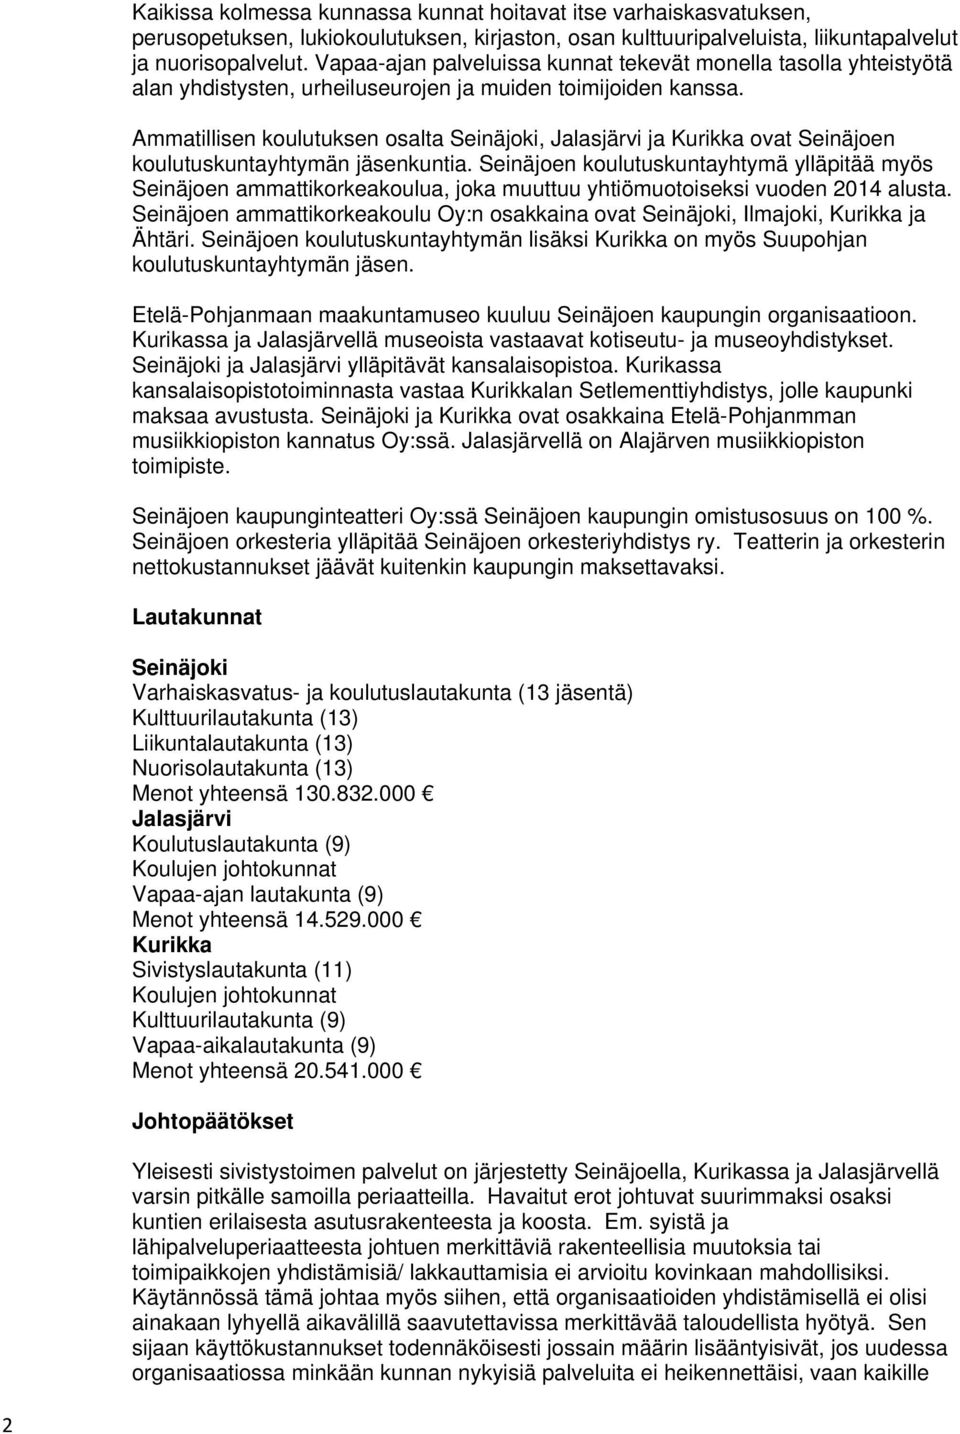 Ammatillisen koulutuksen osalta Seinäjoki, Jalasjärvi ja Kurikka ovat Seinäjoen koulutuskuntayhtymän jäsenkuntia.